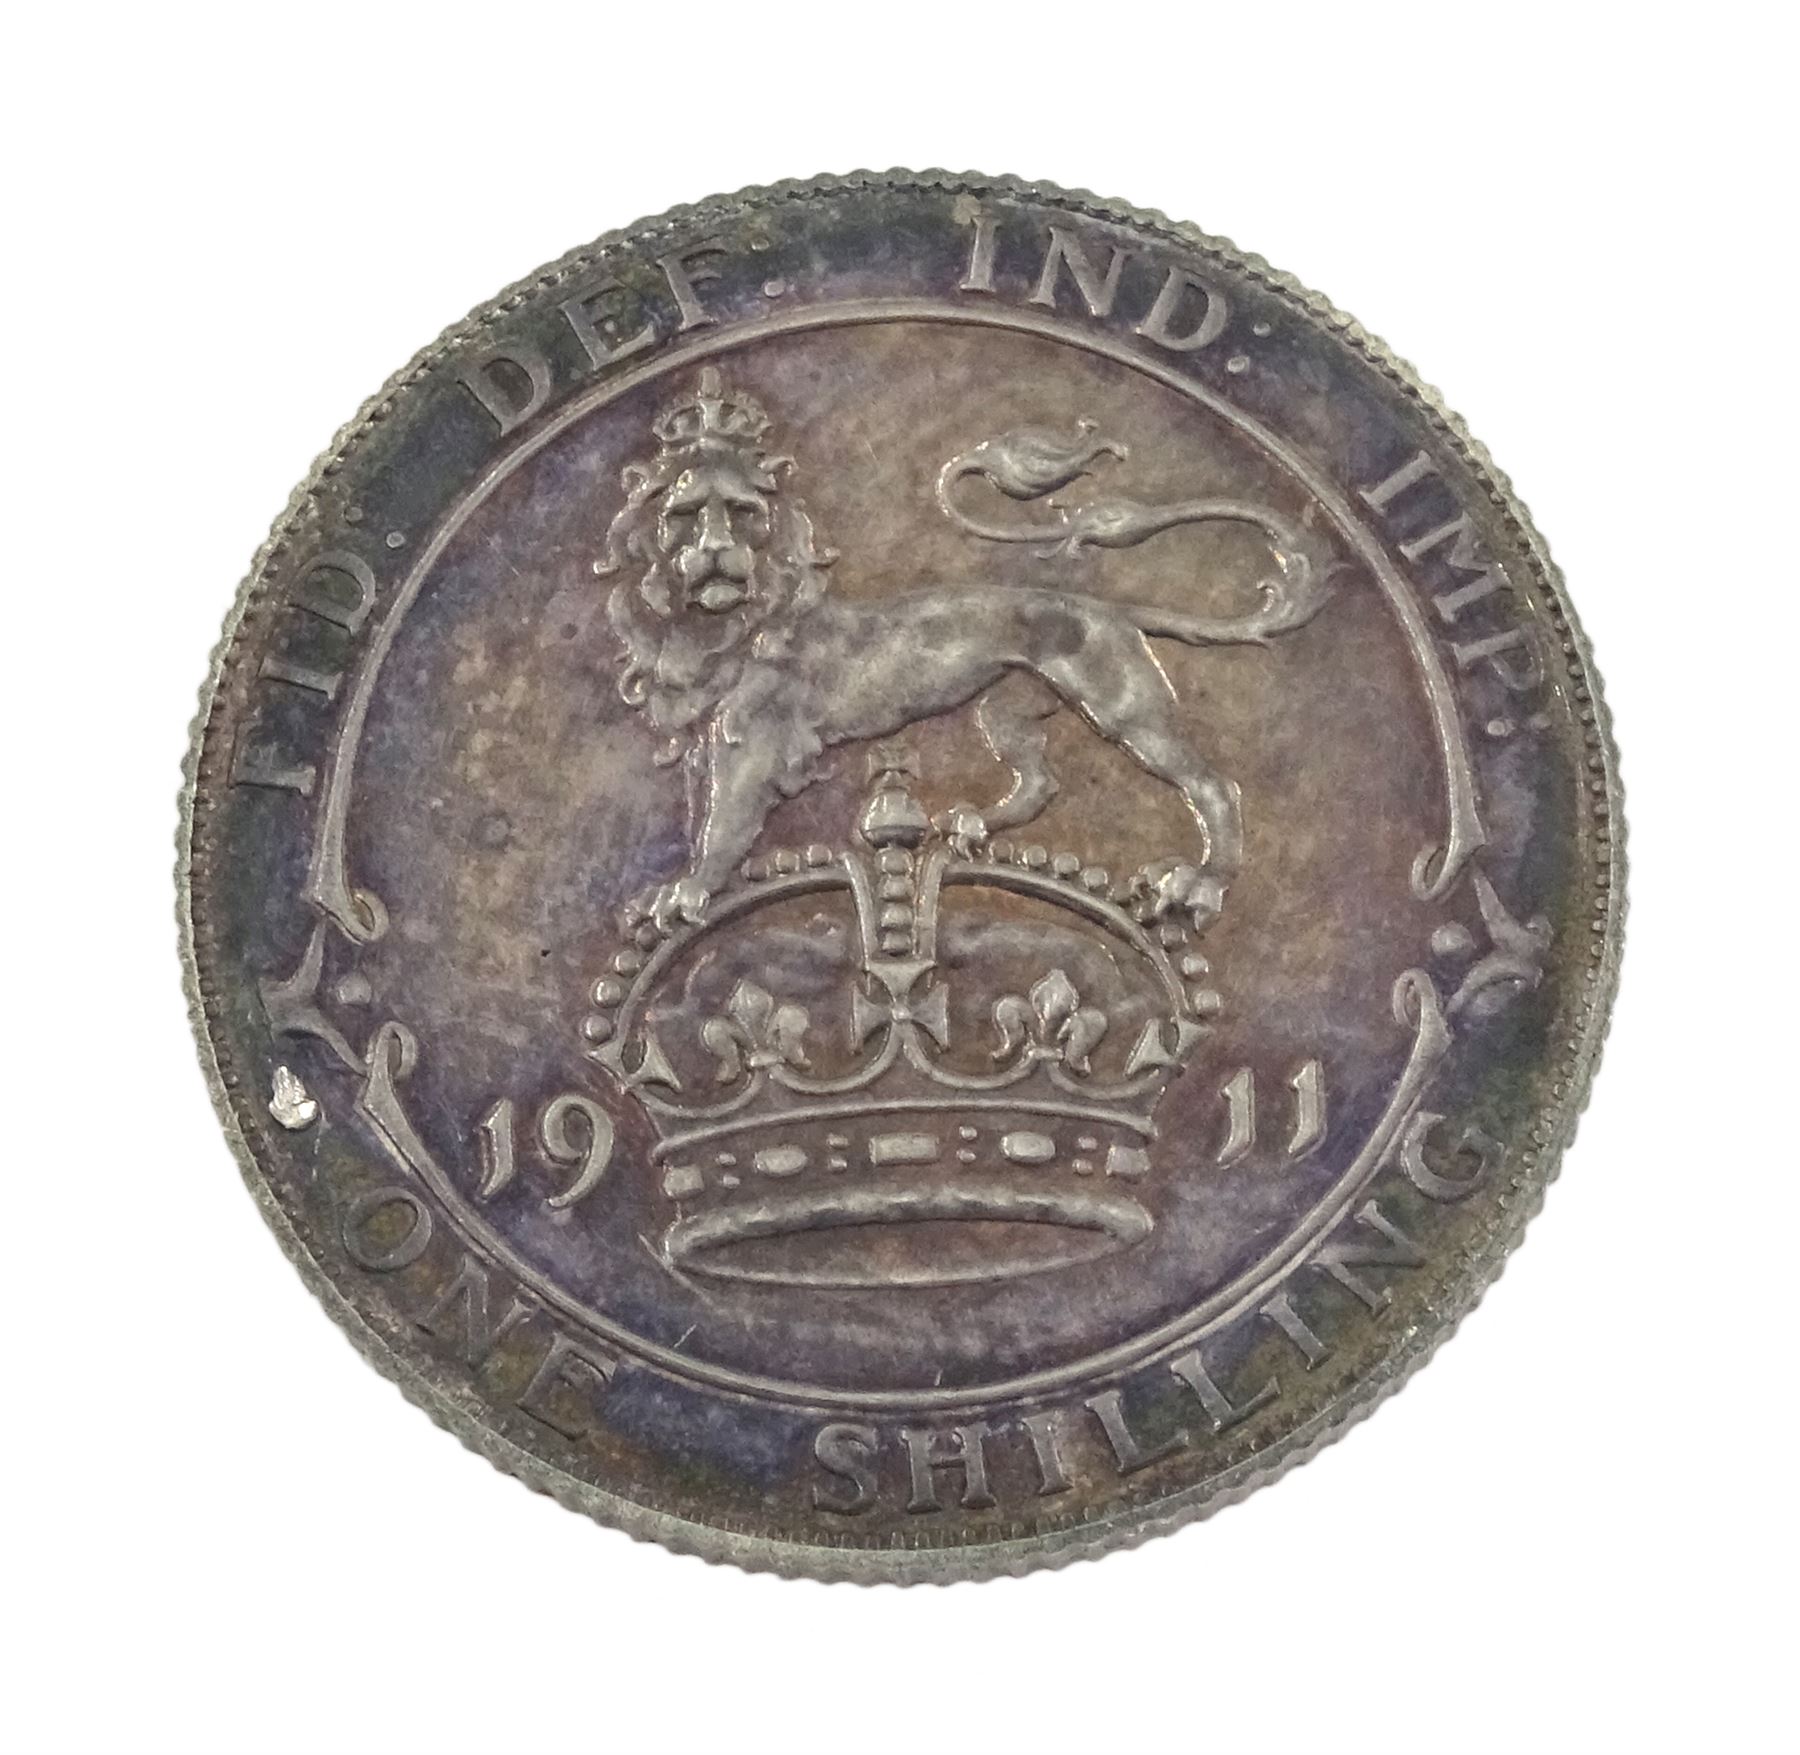 King George V 1911 proof short coin set - Image 11 of 24